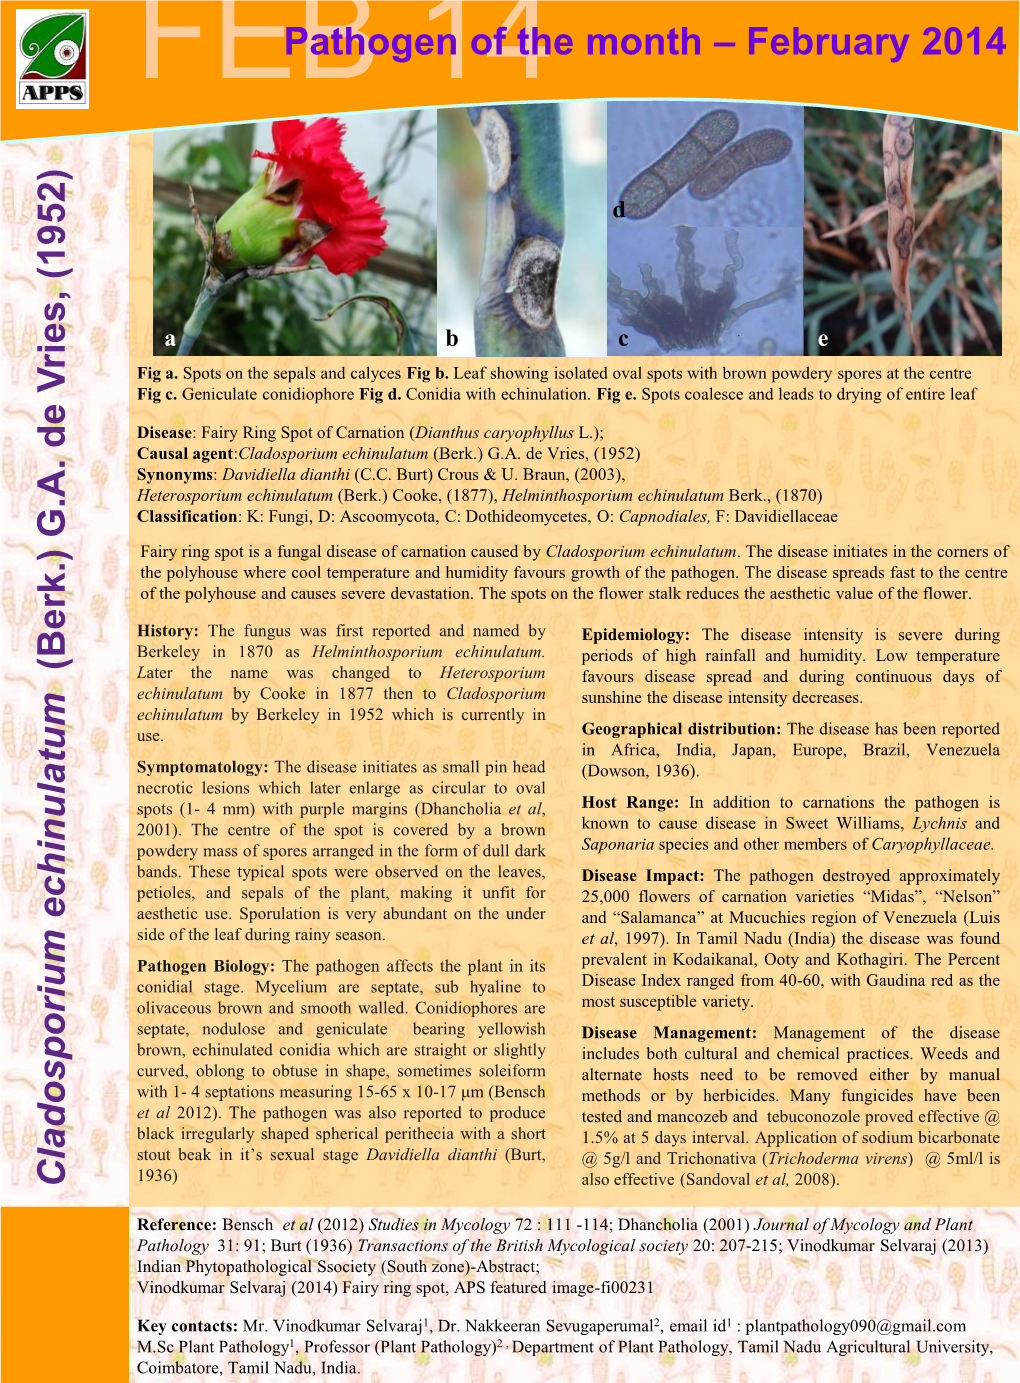 Clado Spo Rium Ech Inulatum (Berk.) G.A. De V Ries, (19 52) Pathogen of the Month – February 2014